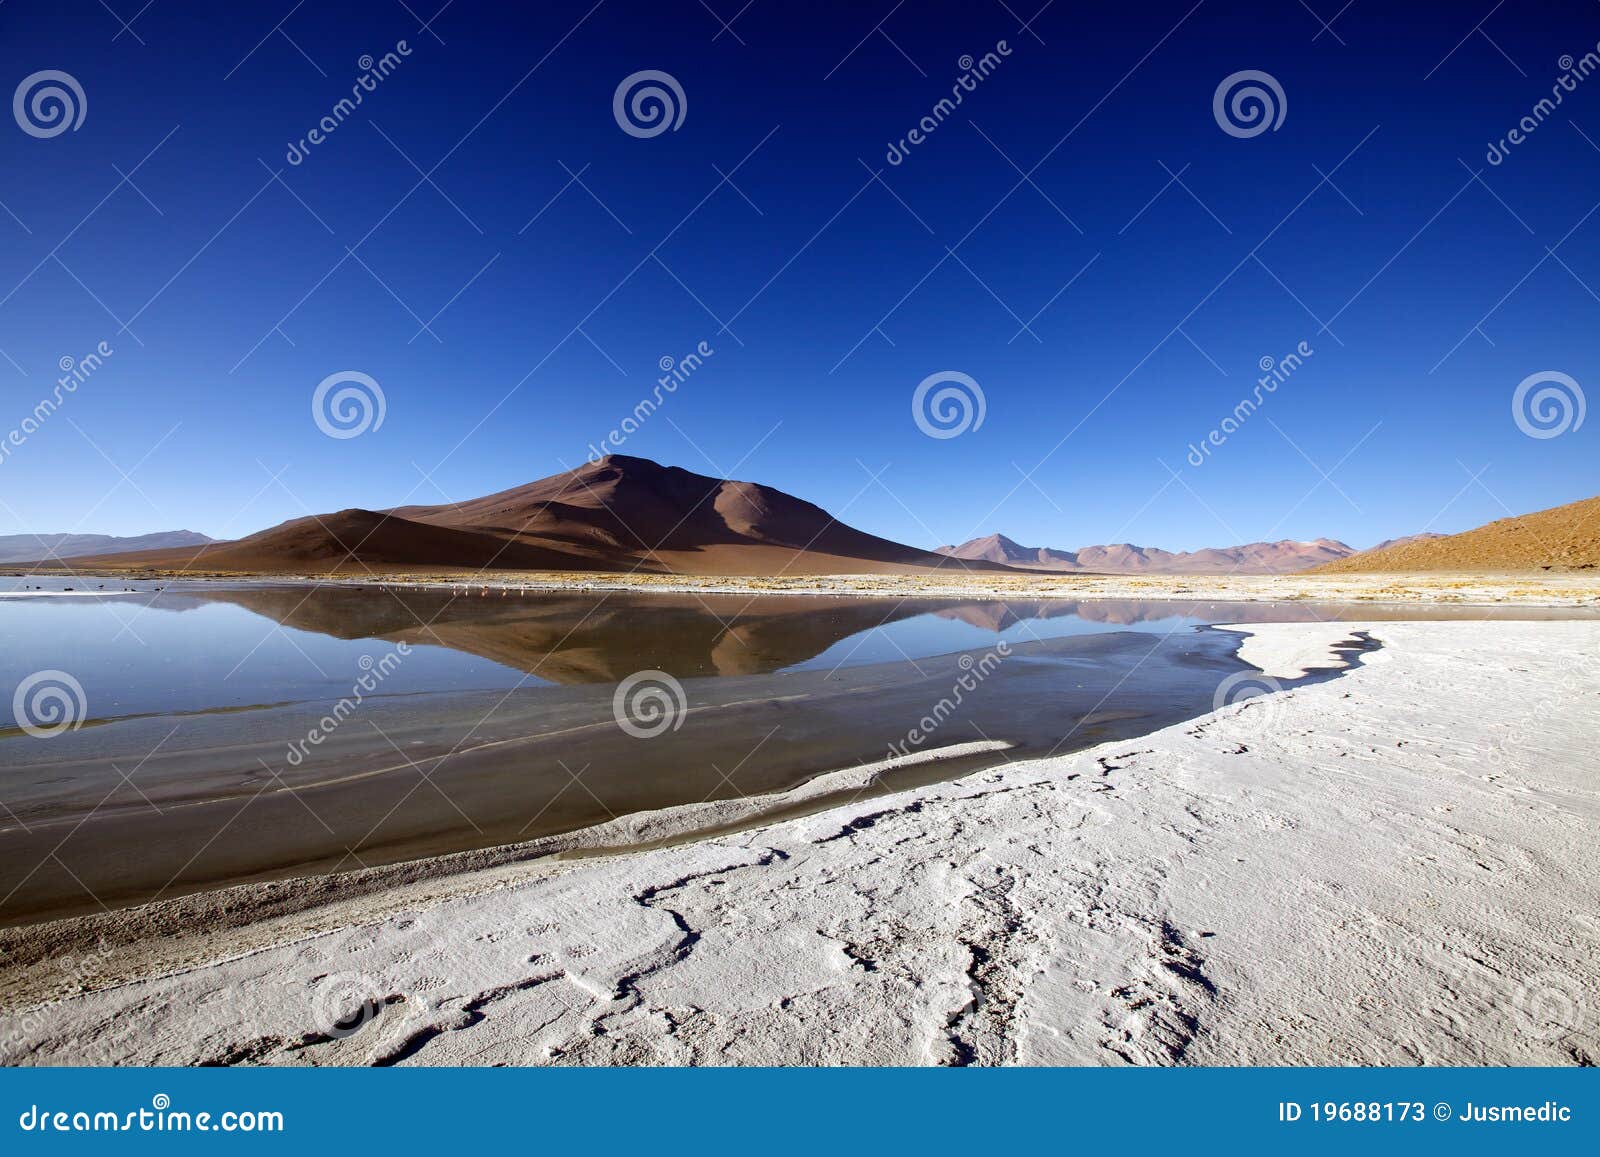 altiplano landscape